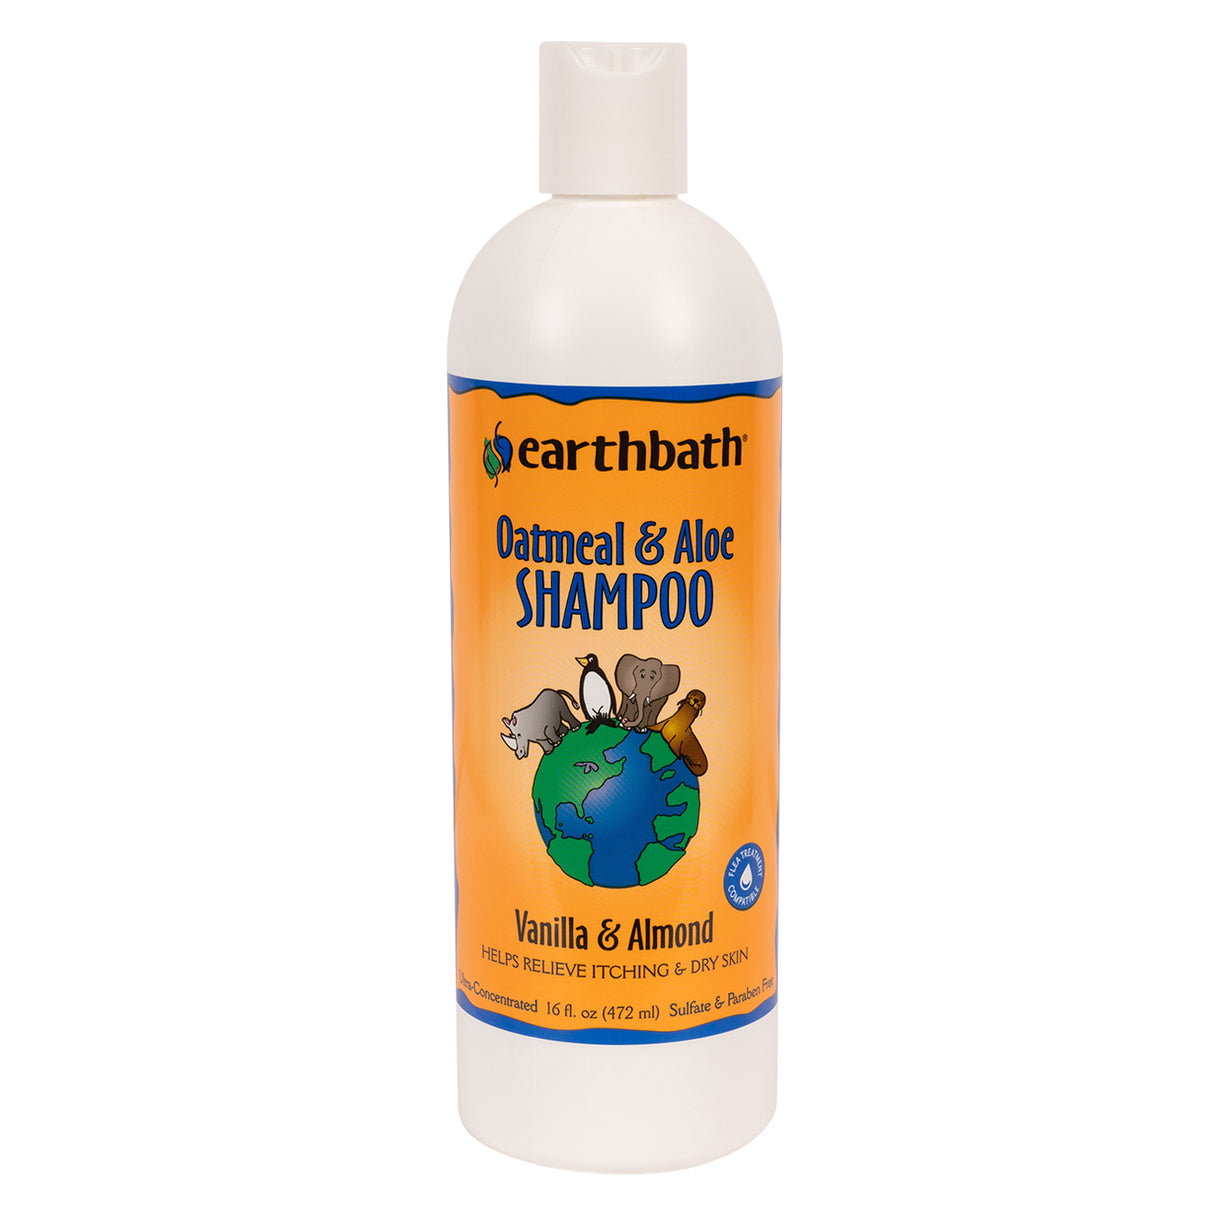 Earthbath Oatmeal & Aloe Shampoo 472 mL